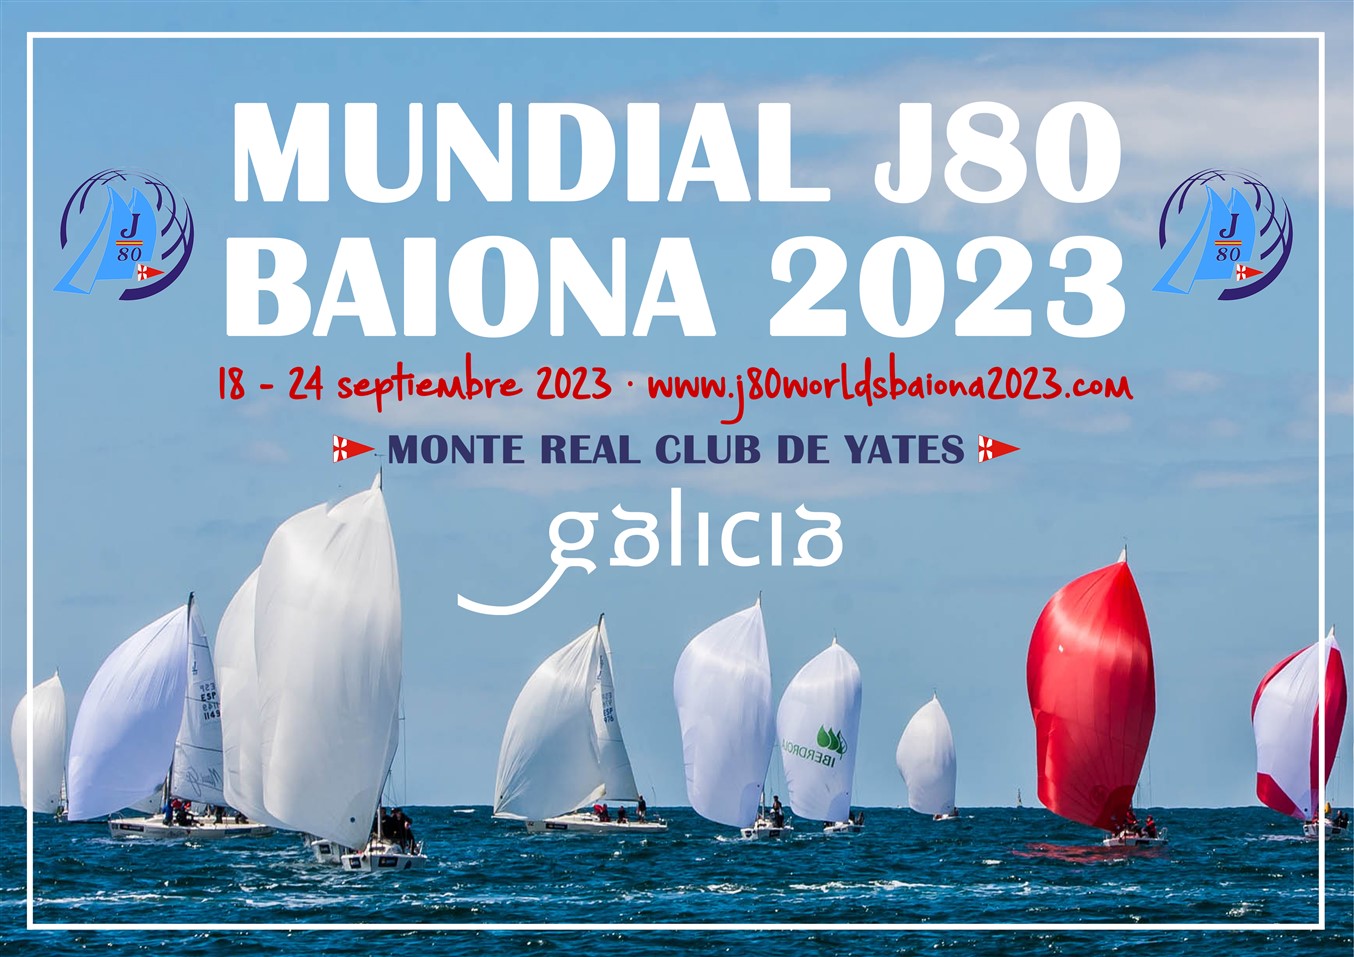 FOTOS Y VIDEO: PRESENTACIÓN DEL MUNDIAL J80 BAIONA 2023 EN FITUR